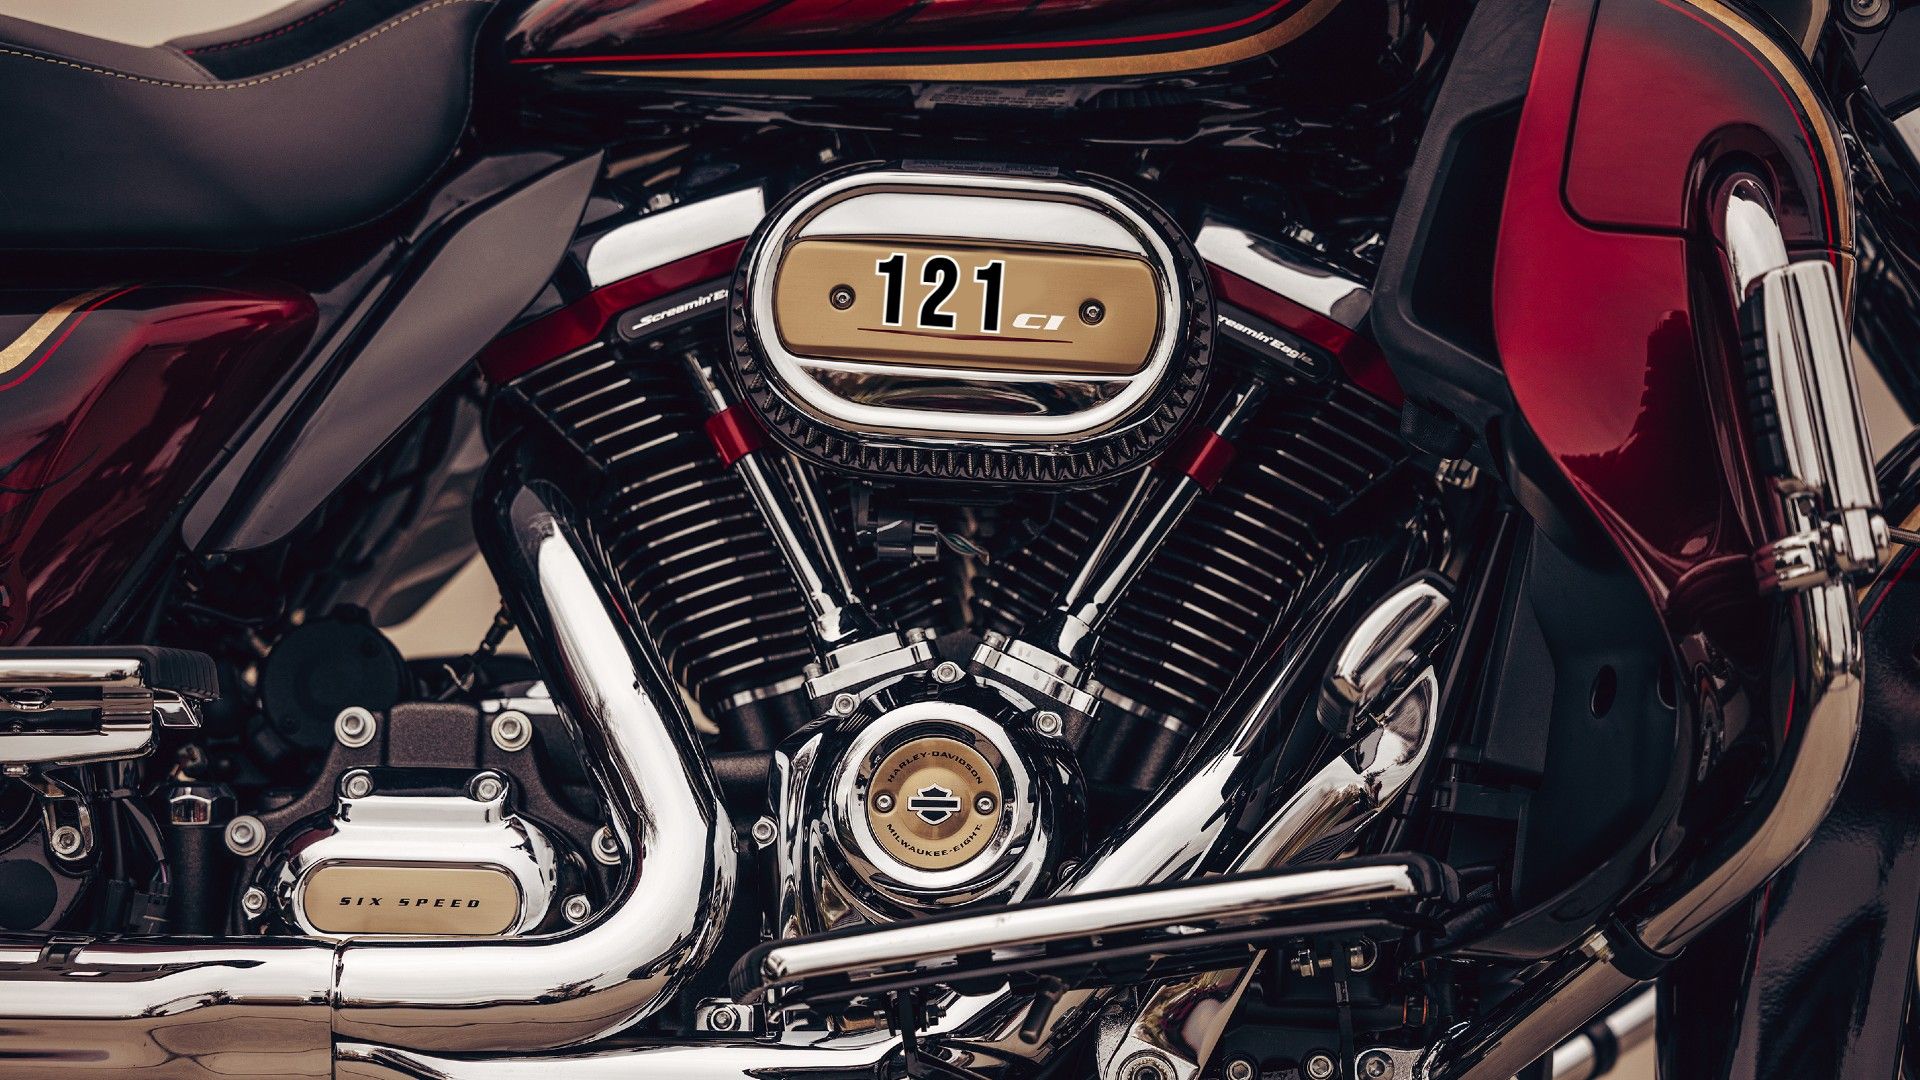 Harley Davidson 121ci